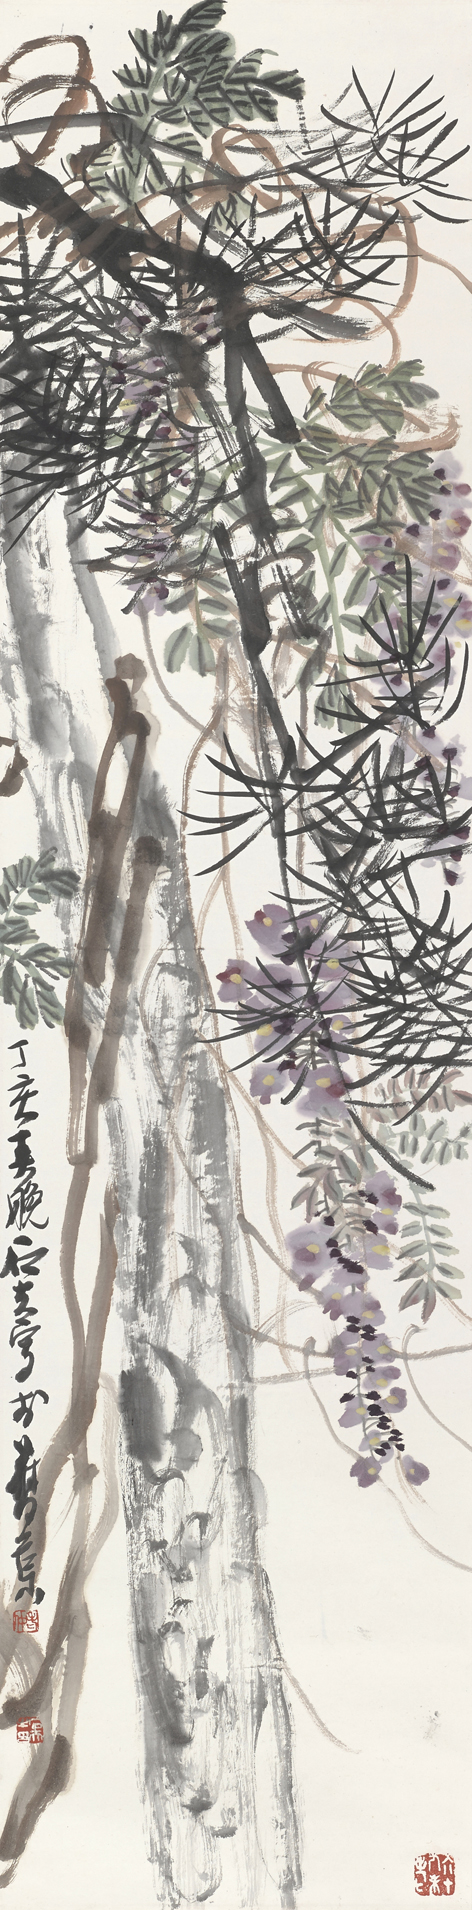 松树紫藤